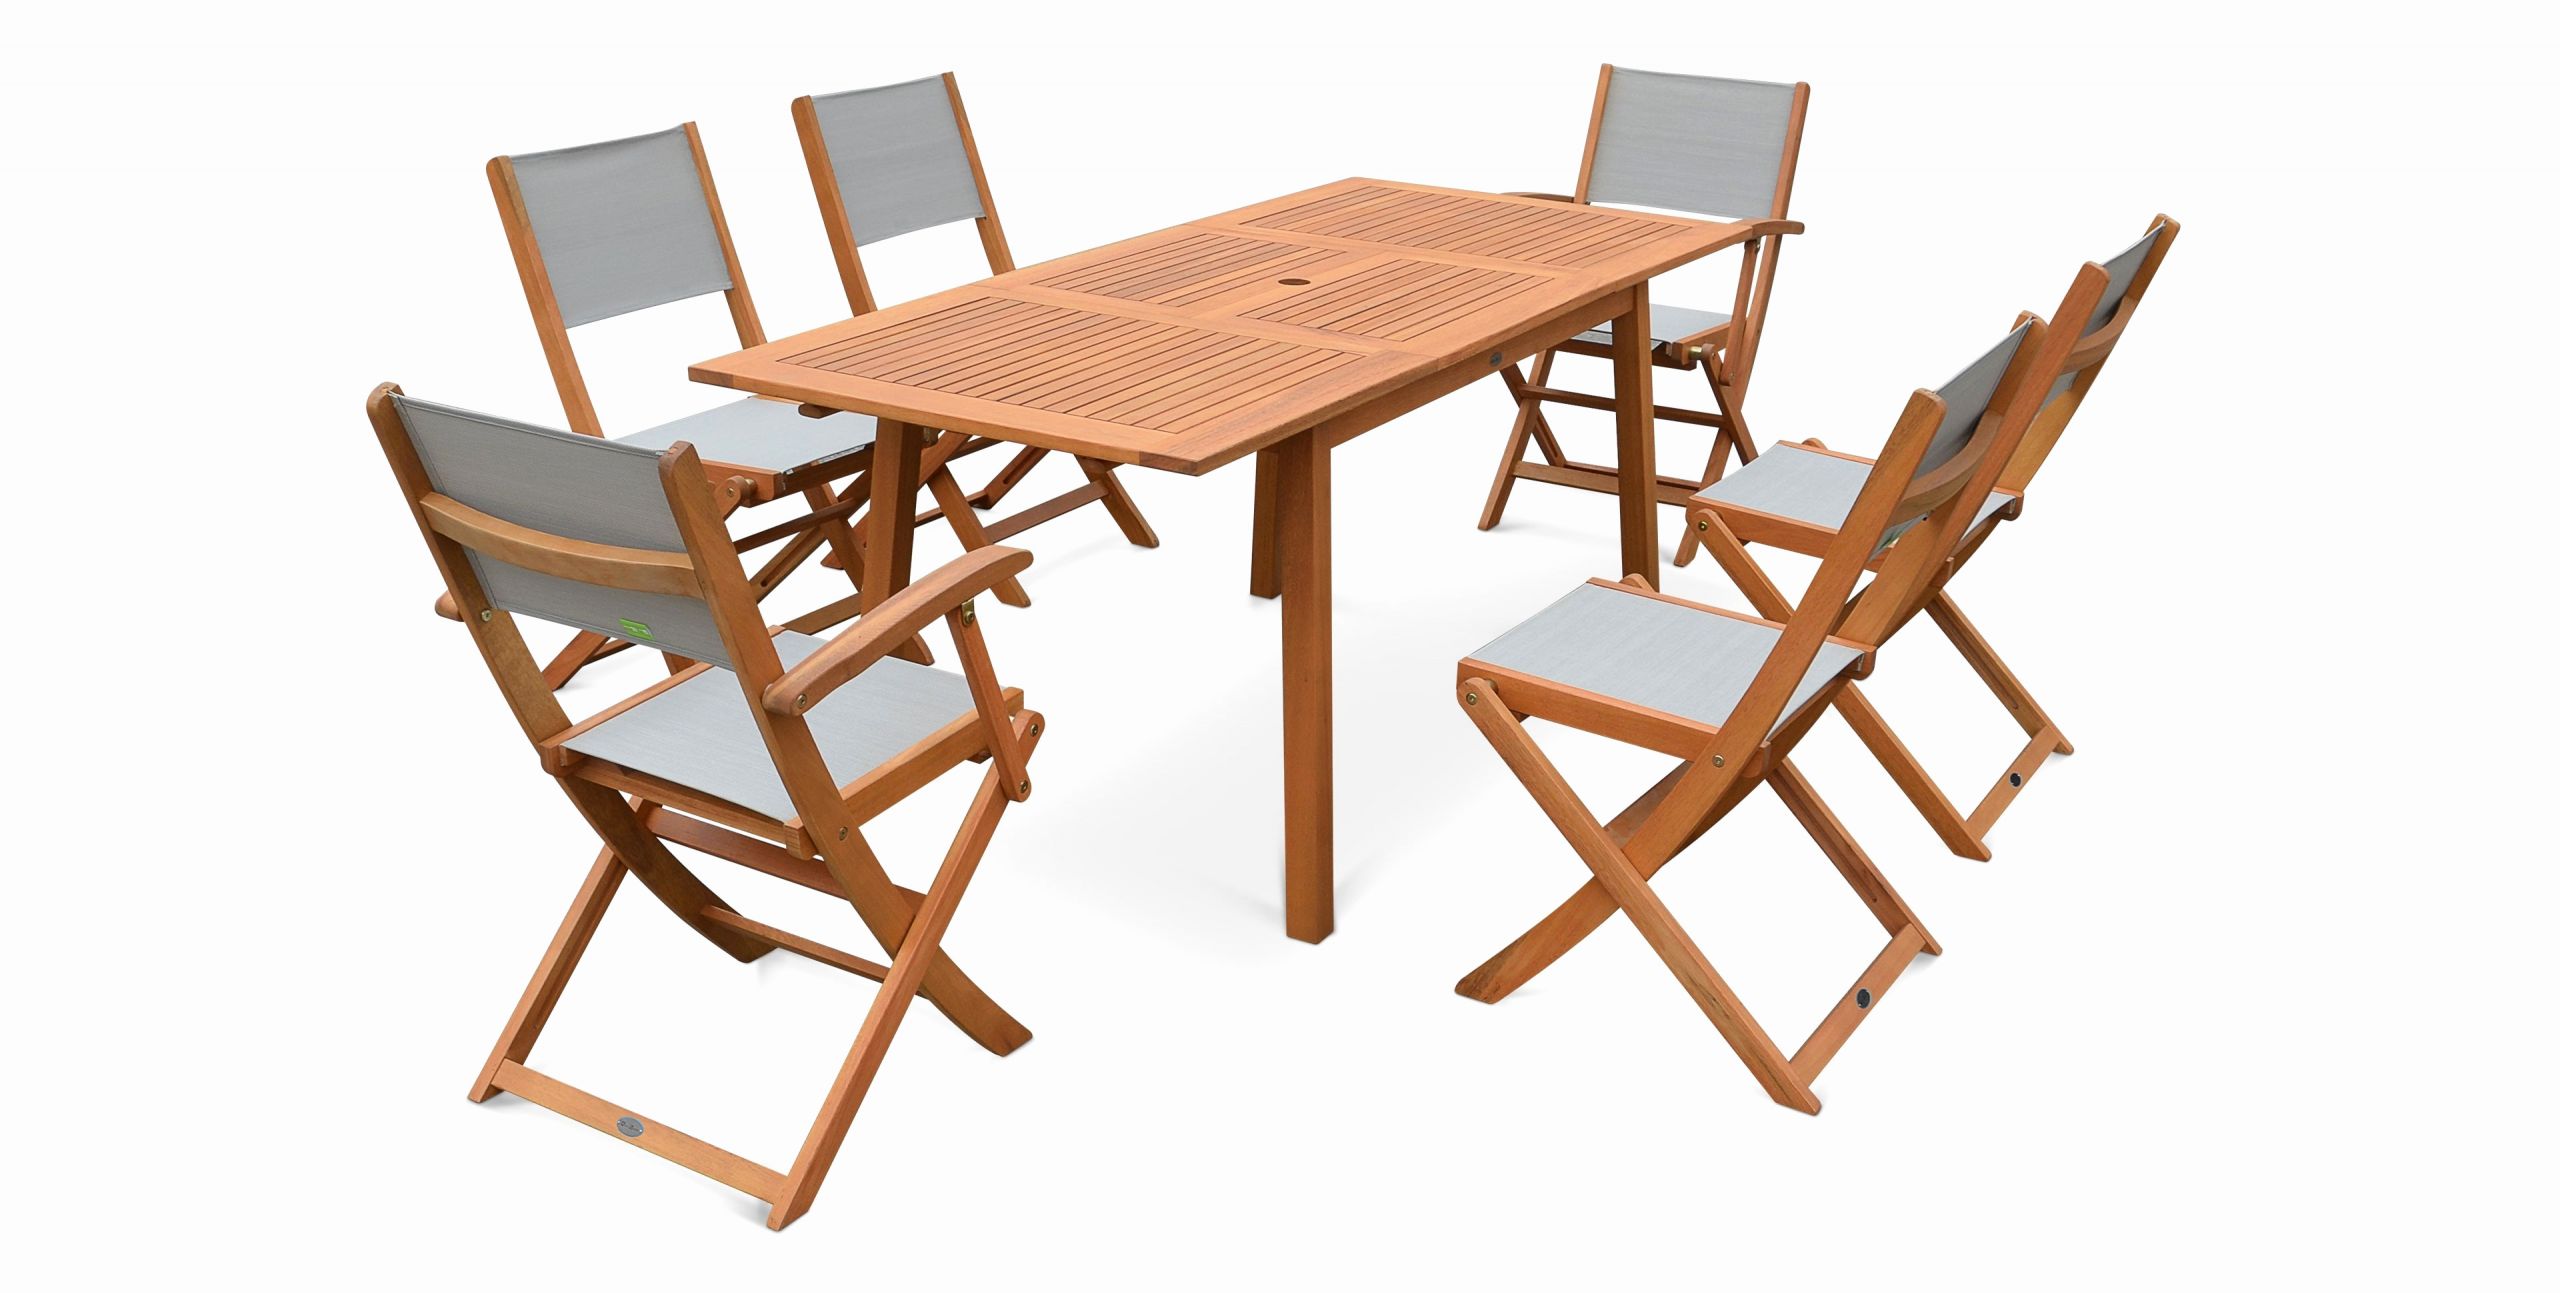 carrefour table pliante meilleur de carrefour meuble de jardin chaise basse de jardin chaise pliante of carrefour table pliante